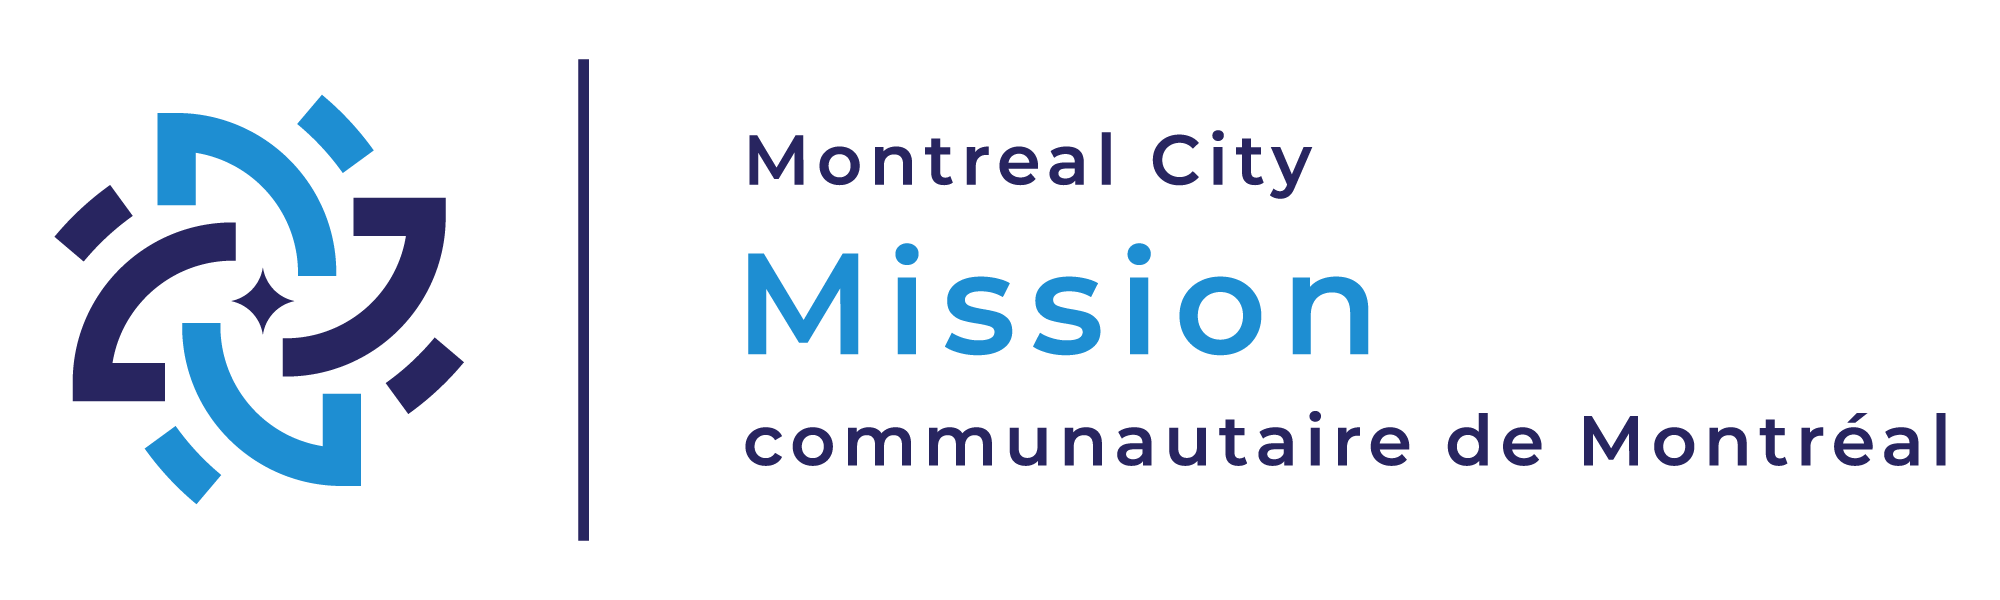 Montreal City Mission – Mission communautaire de Montréal